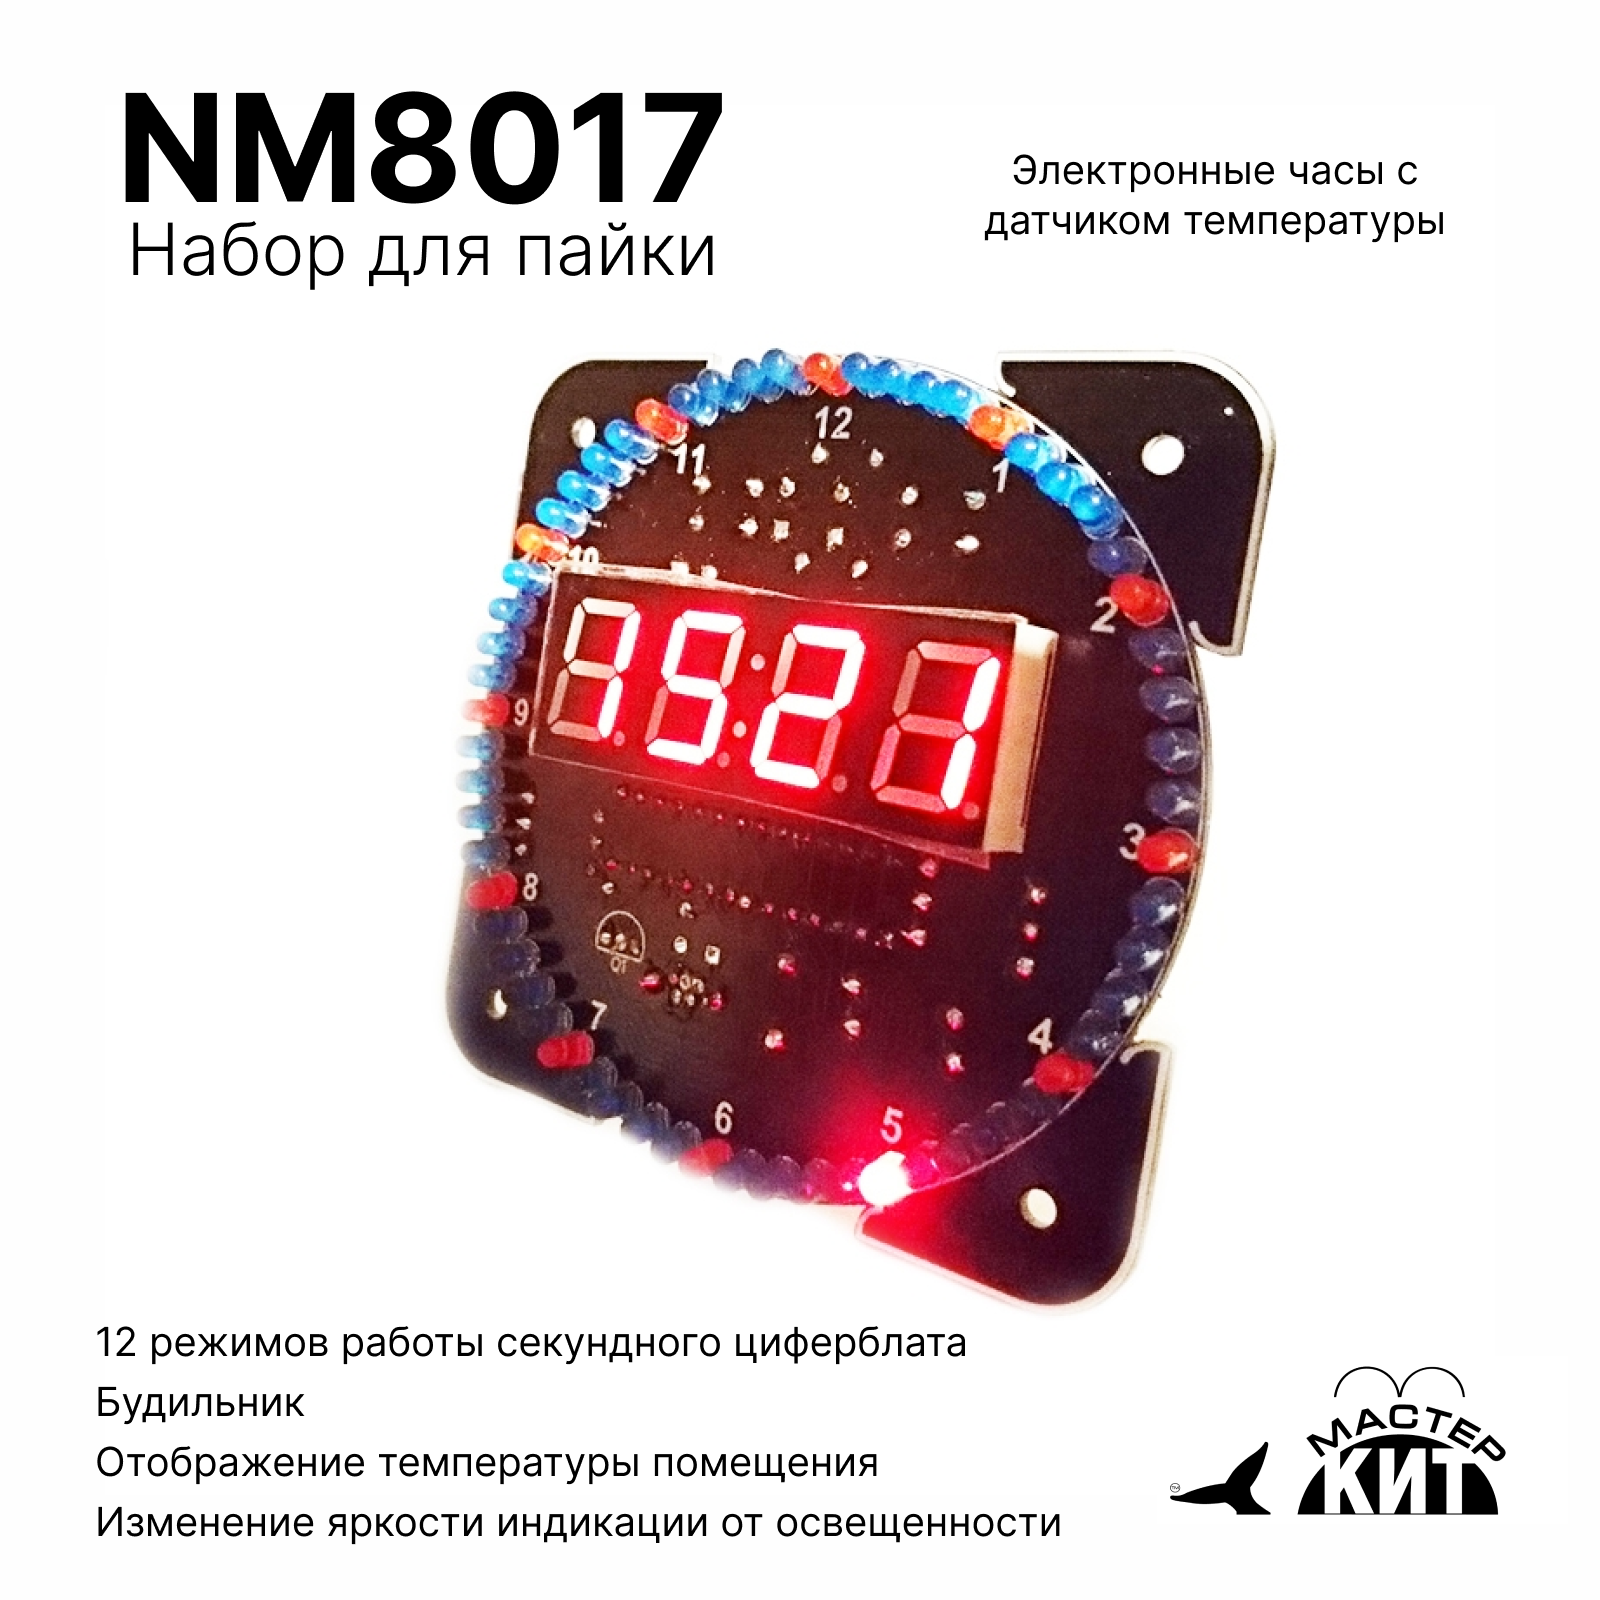 Набор для пайки Мастер Кит Часы электронные настольные с датчиком температуры, NM8017 набор для пайки мастер кит омузыкальная установка на светодиодах nf192led